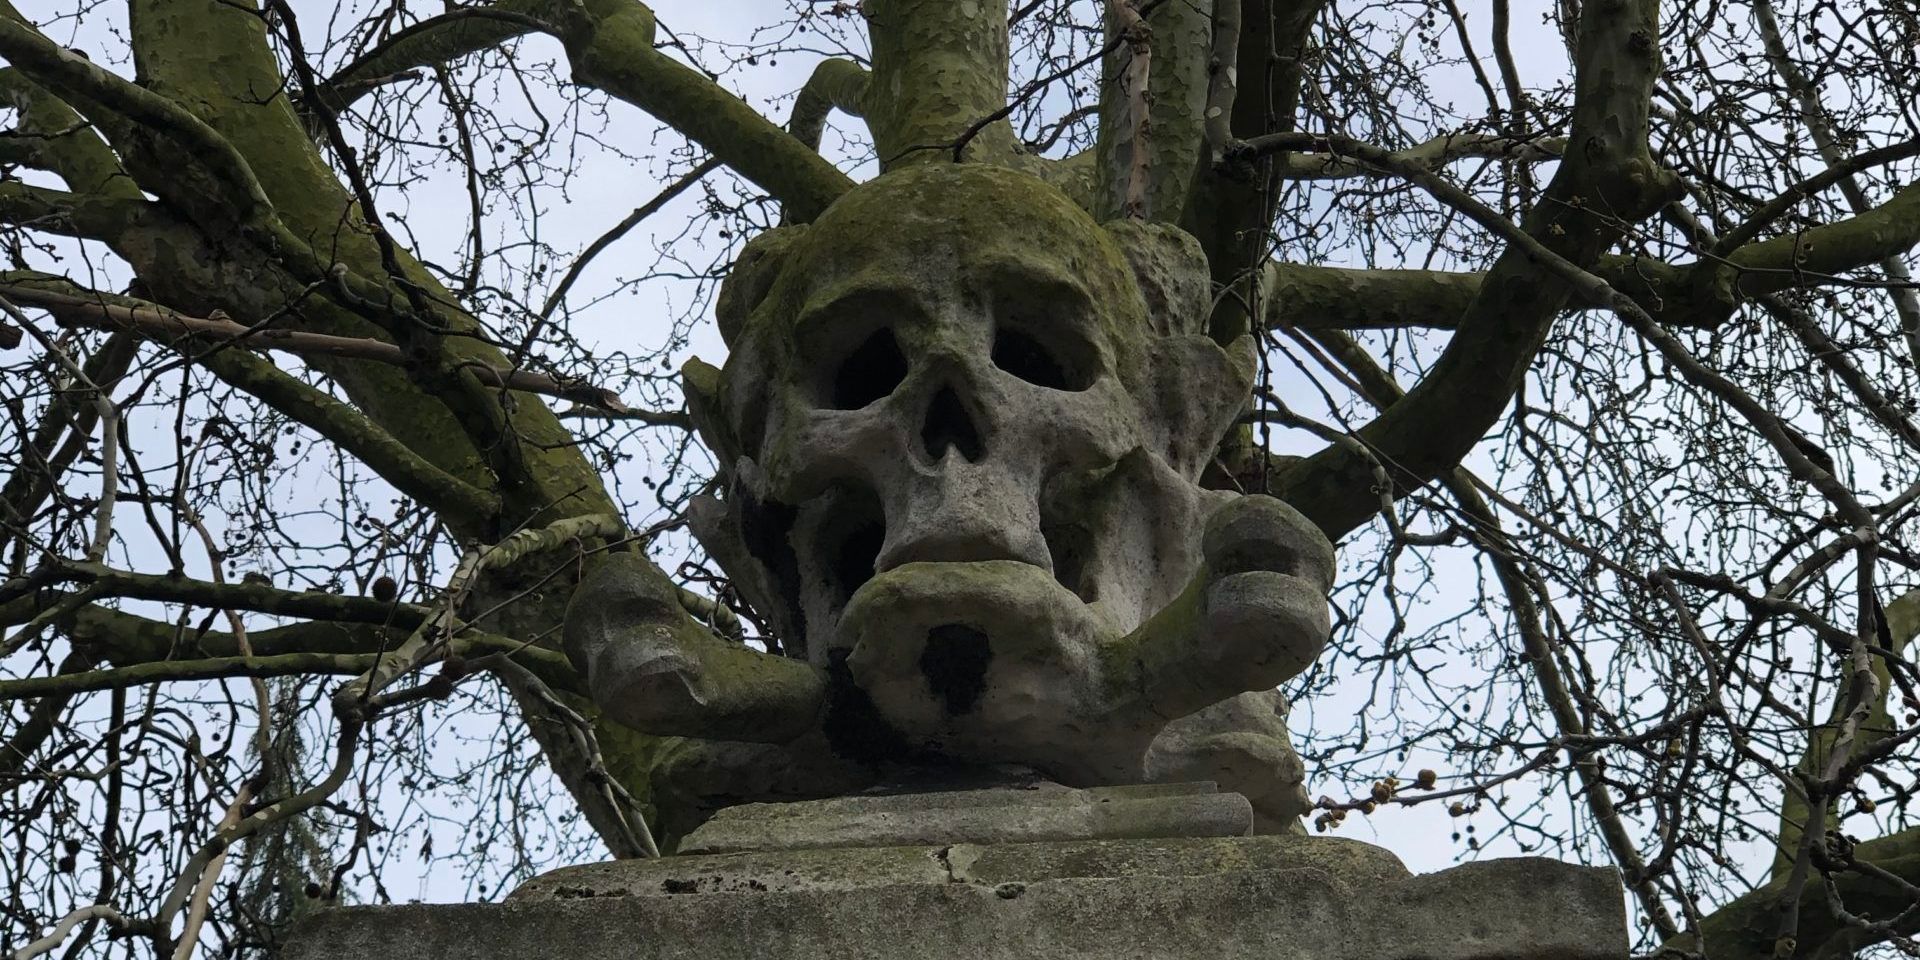 Skull and crossbones statue